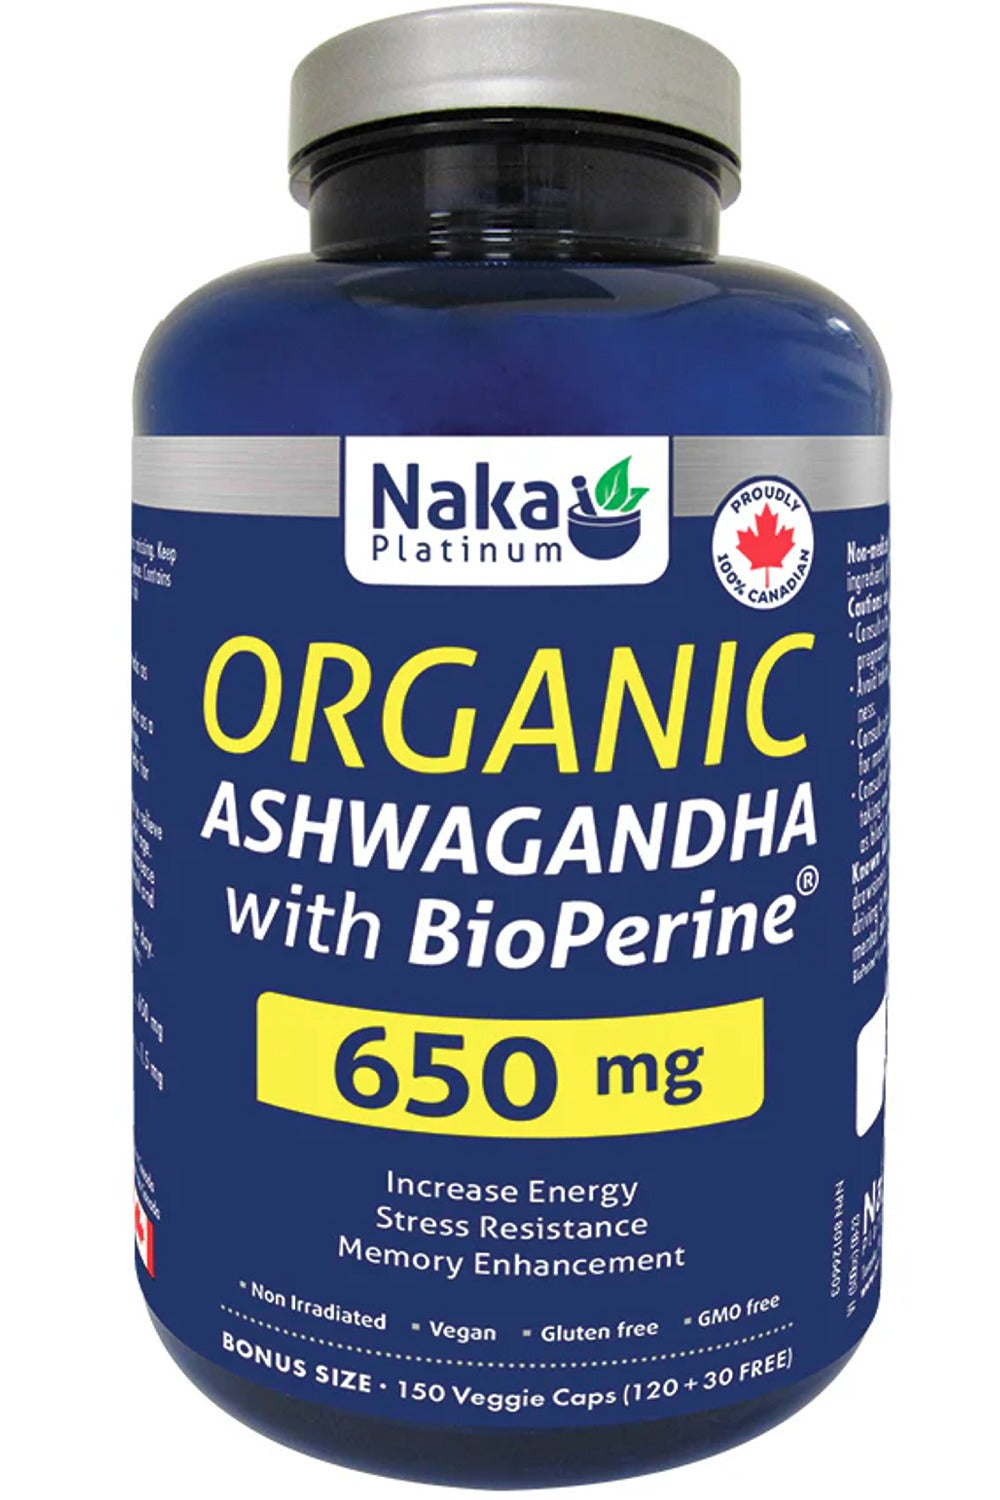 NAKA Platinum Ashwagandha with BioPerine (650mg - 150 veg caps)